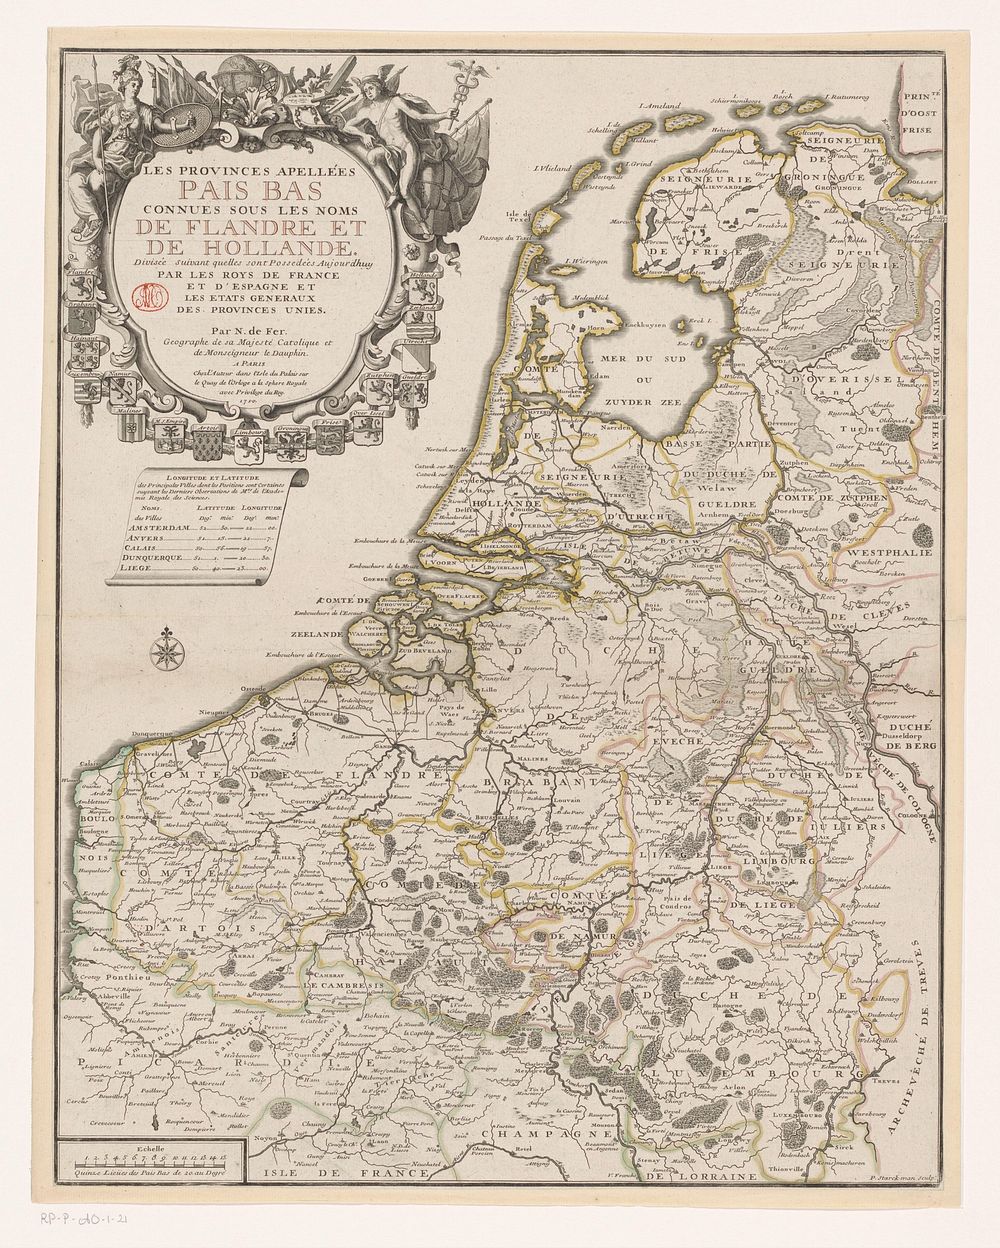 Kaart van de Zeventien Provinciën (1709 - before 1710) by P Starckman, Nicolas de Fer and Nicolas de Fer